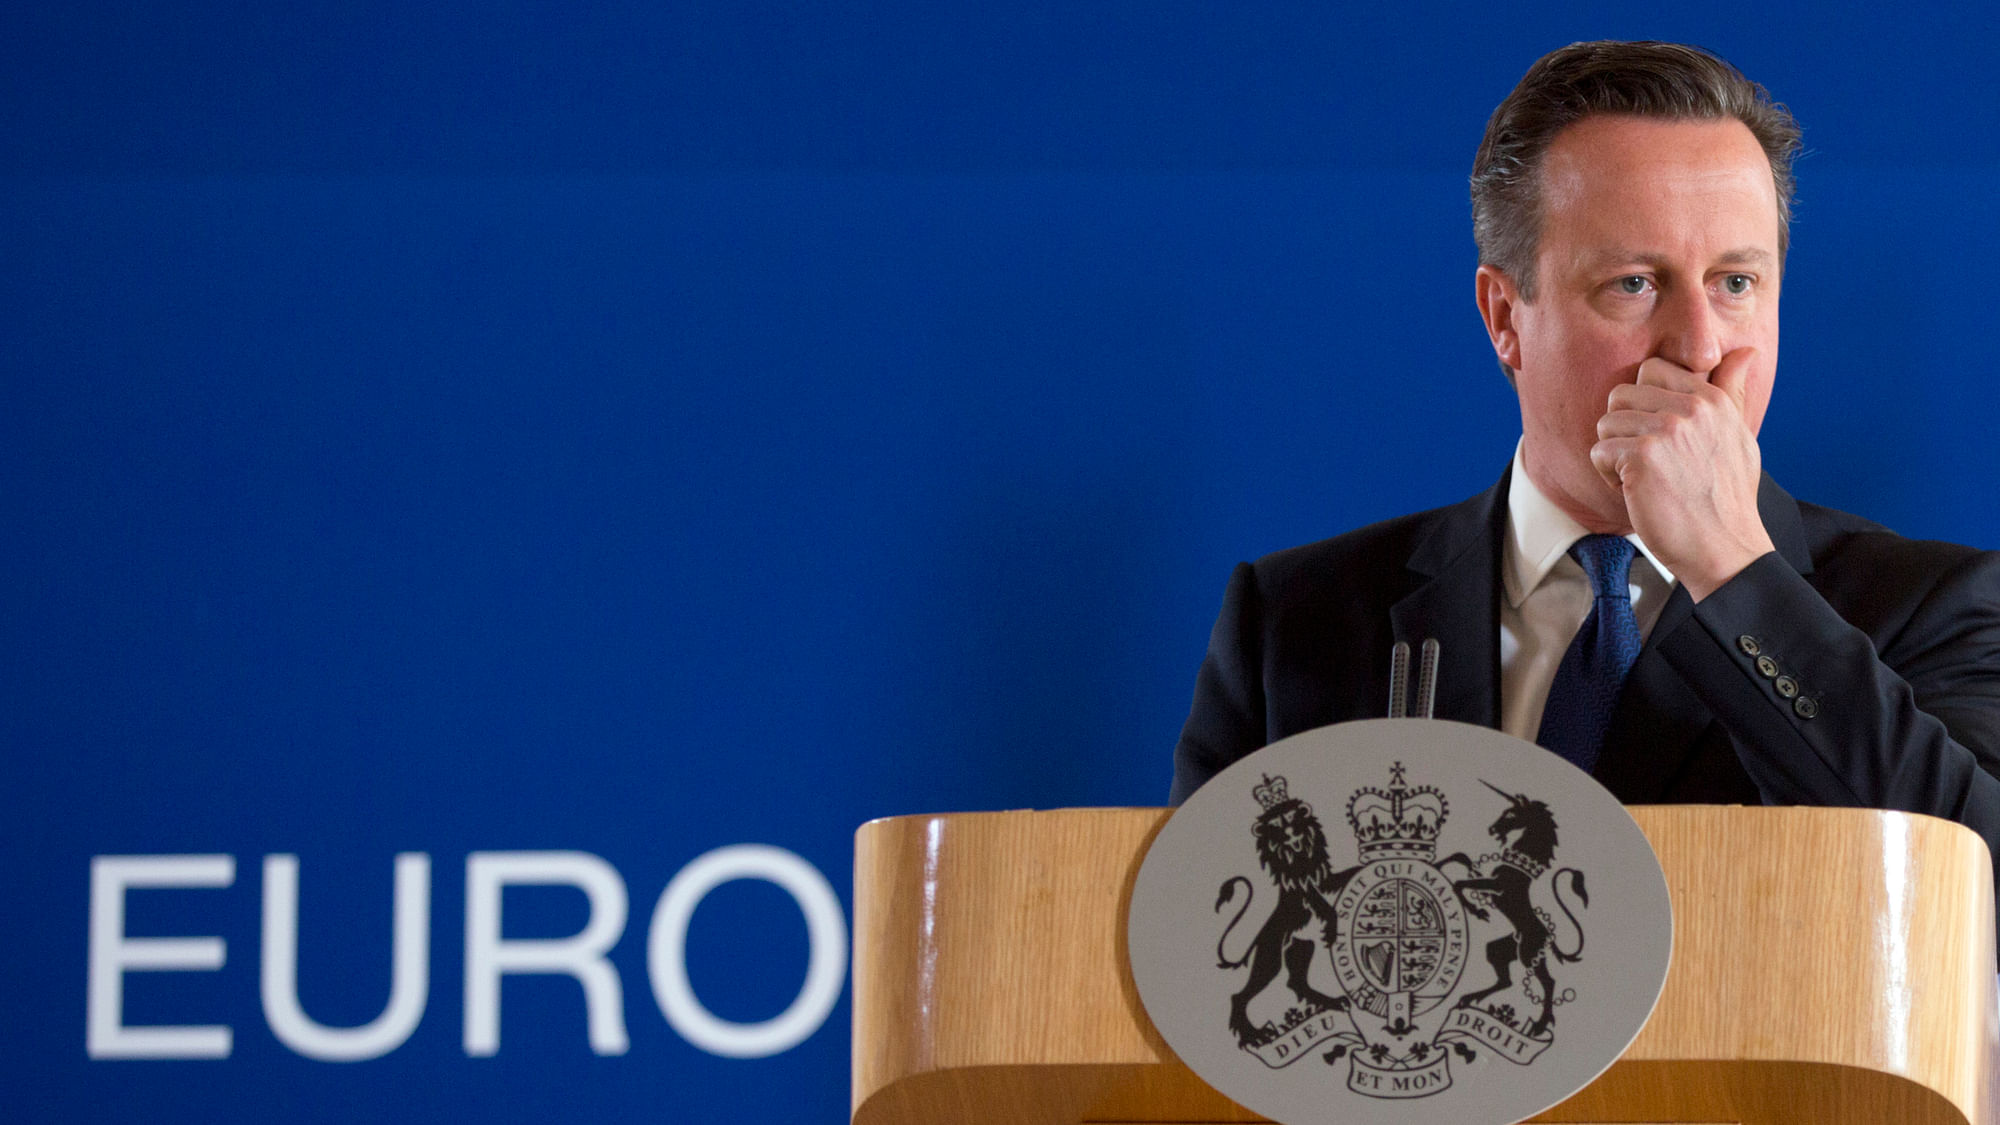 File photo of David Cameron at an EU summit. (Photo: AP)